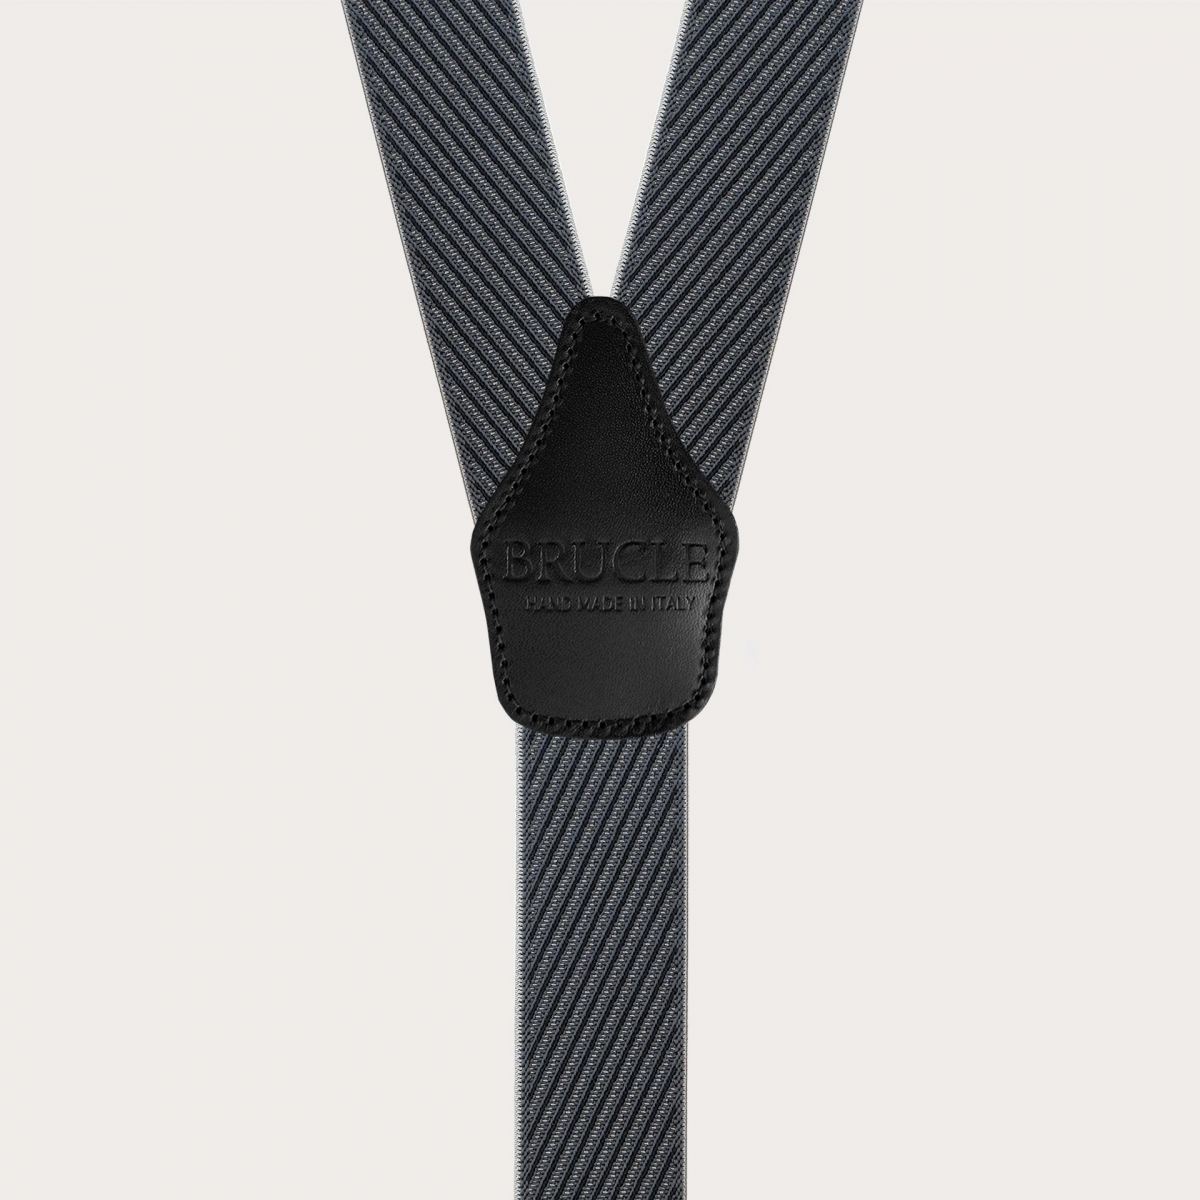 Bretelles élégantes pour homme à rayures obliques noires et grises, double usage